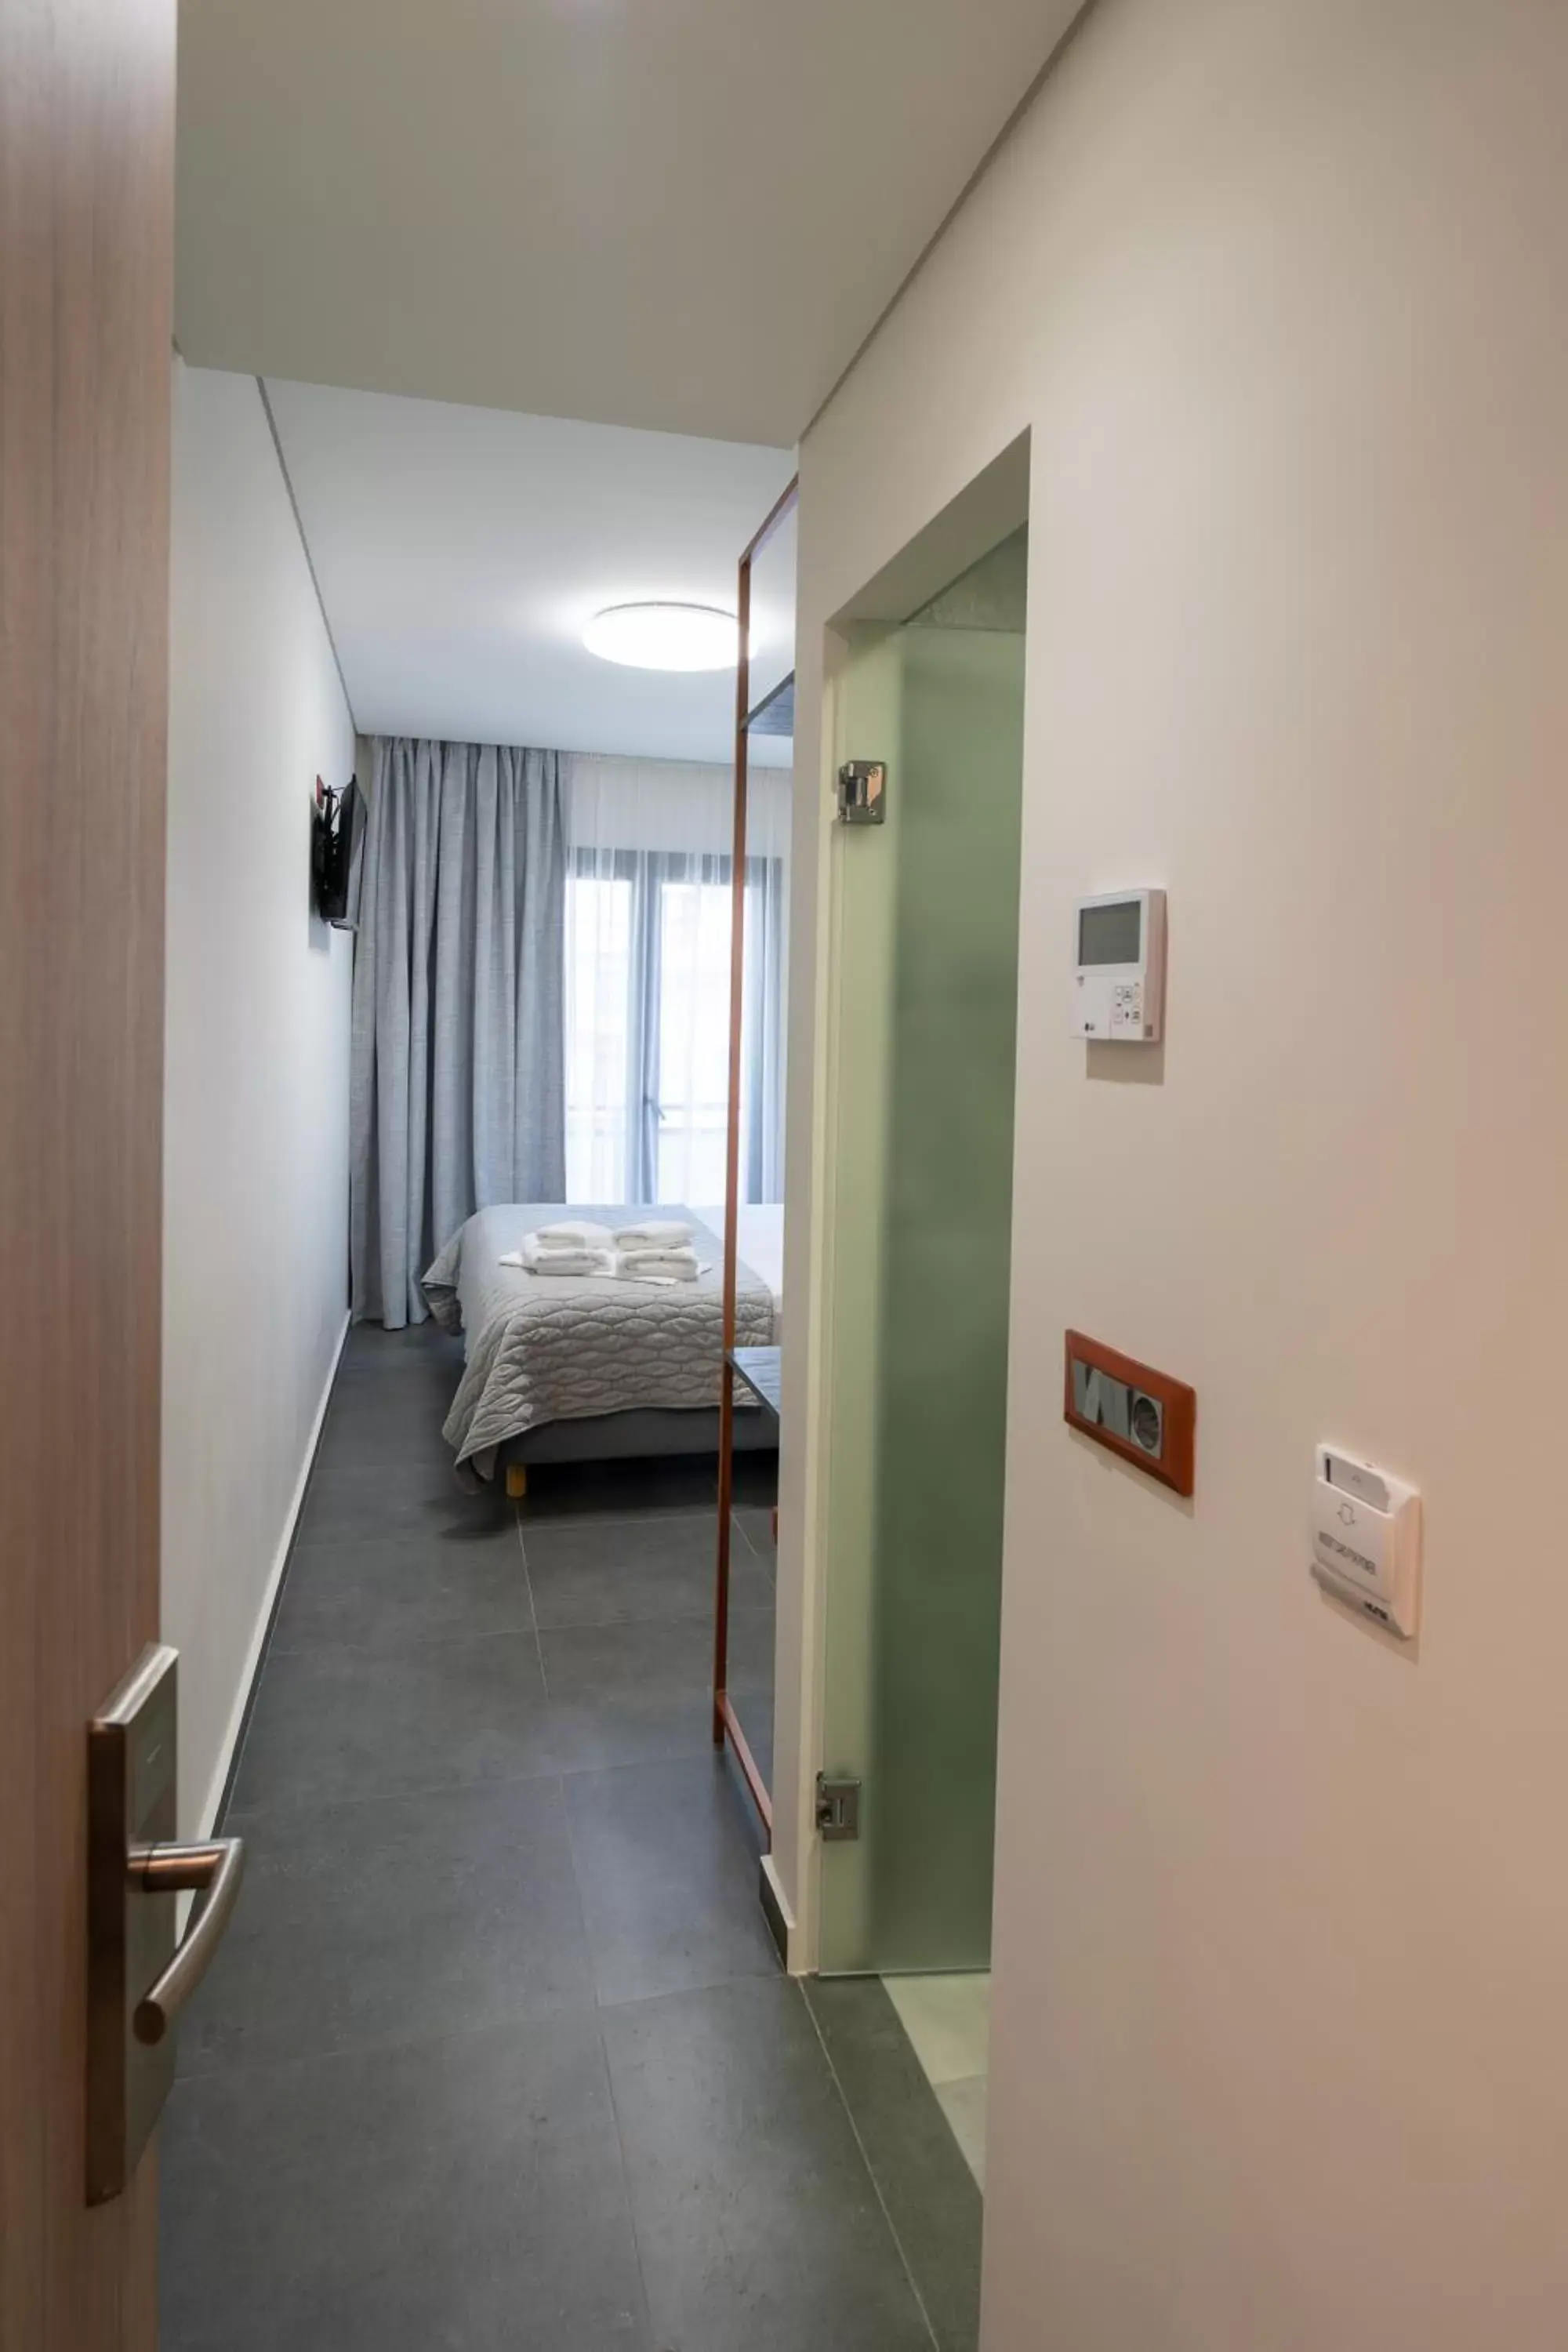 Bedroom, Bed in Argo Hotel Piraeus